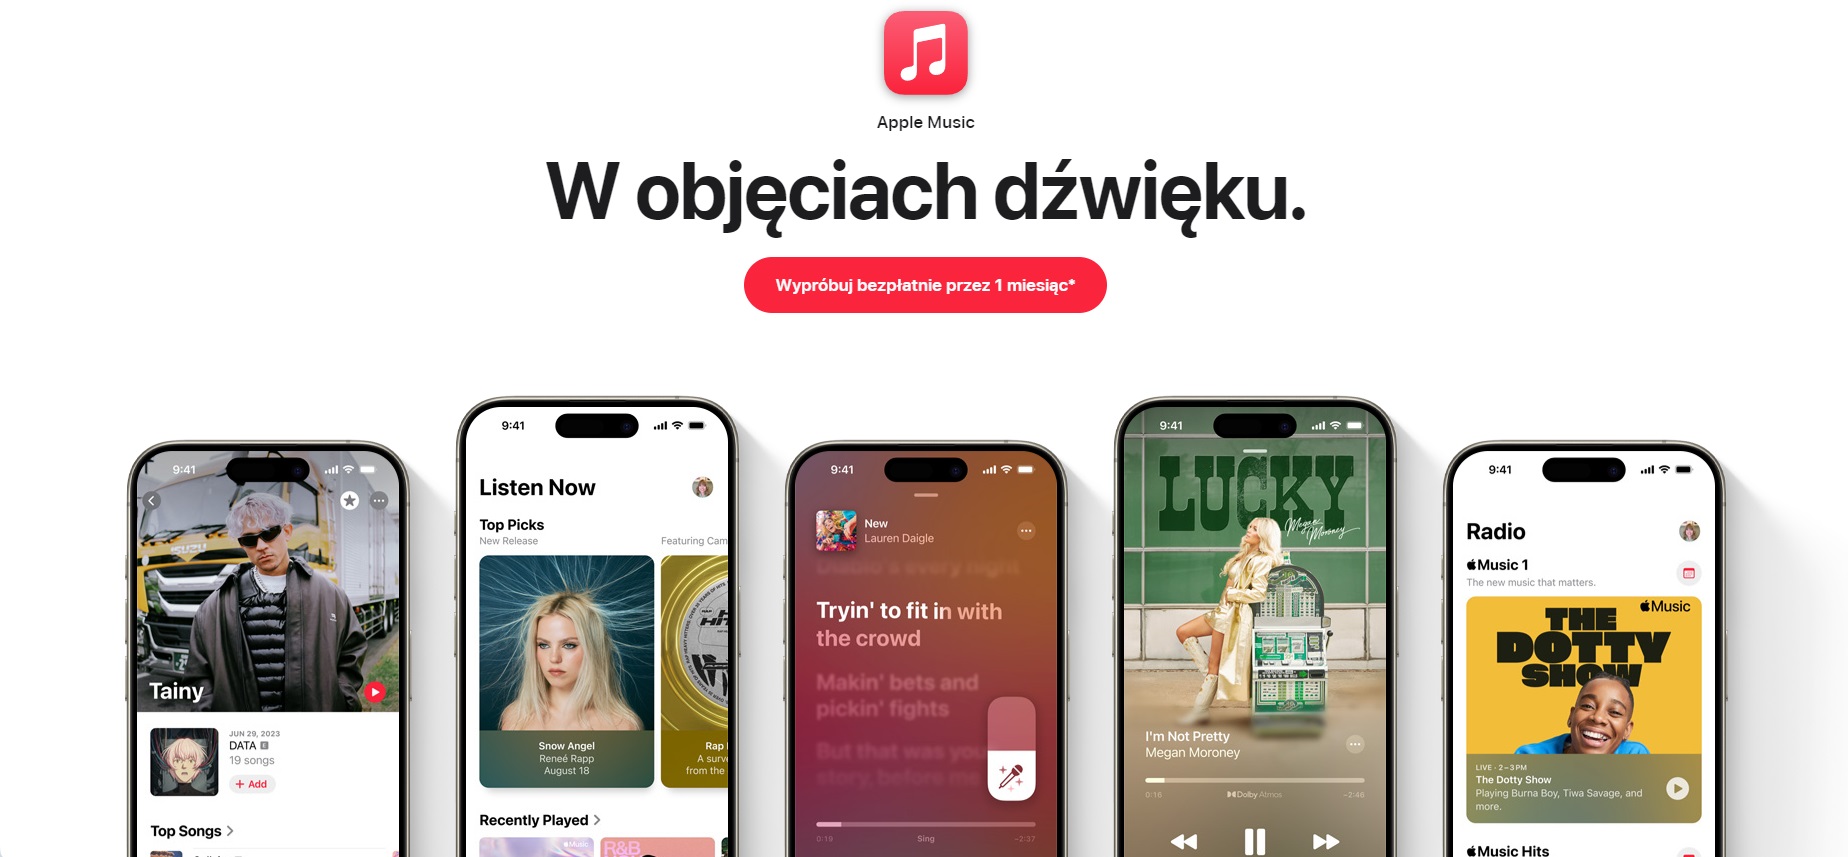 Apple Music strona główna fot. Tabletowo.pl